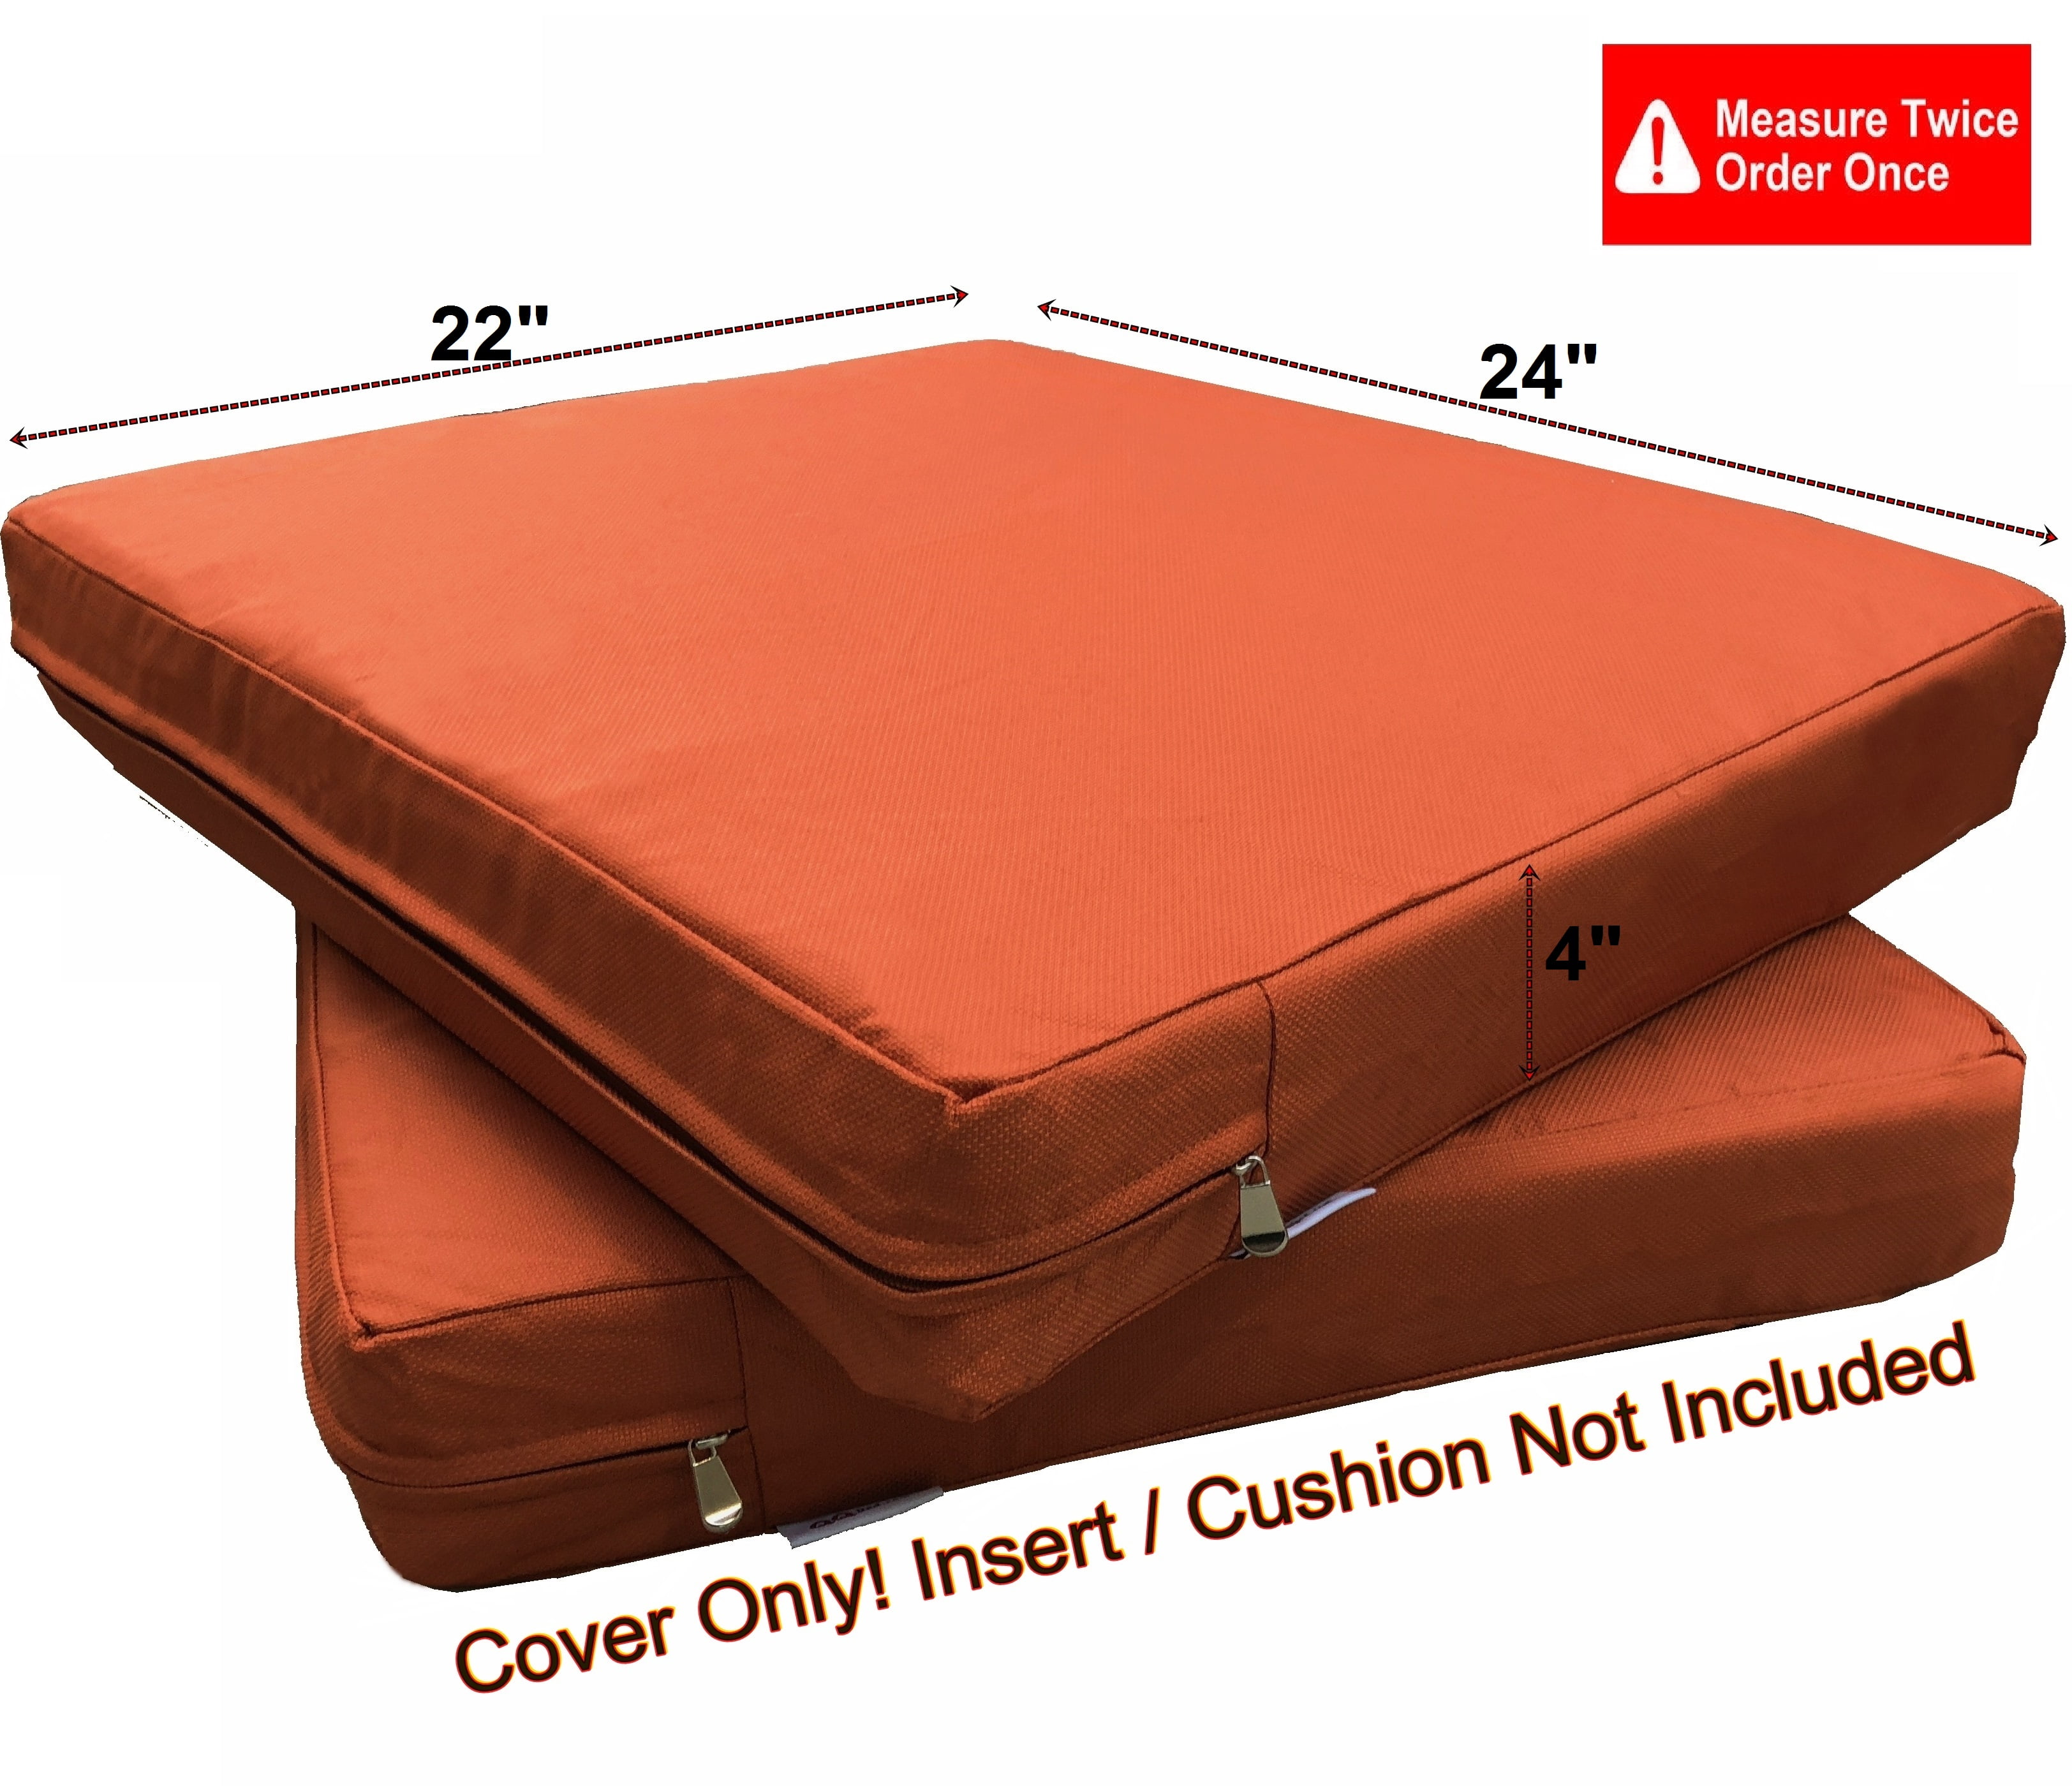 1pcs Waterproof Outdoor/Indoor Furniture Cushions Replacement Deep